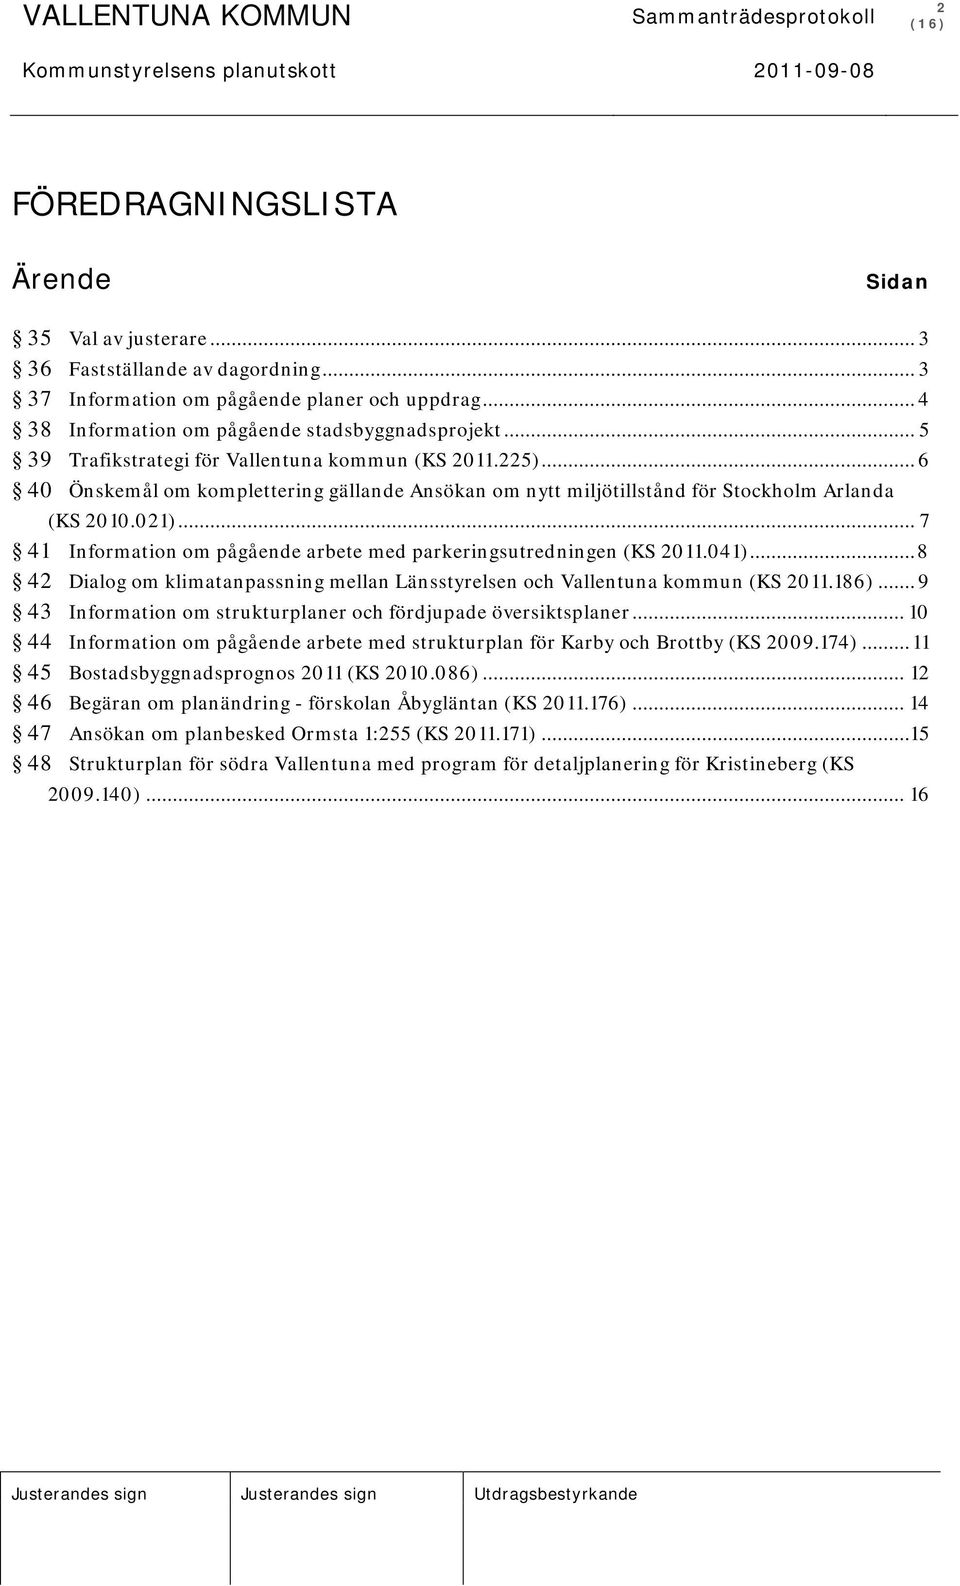 .. 7 41 Information om pågående arbete med parkeringsutredningen (KS 2011.041)... 8 42 Dialog om klimatanpassning mellan Länsstyrelsen och Vallentuna kommun (KS 2011.186).